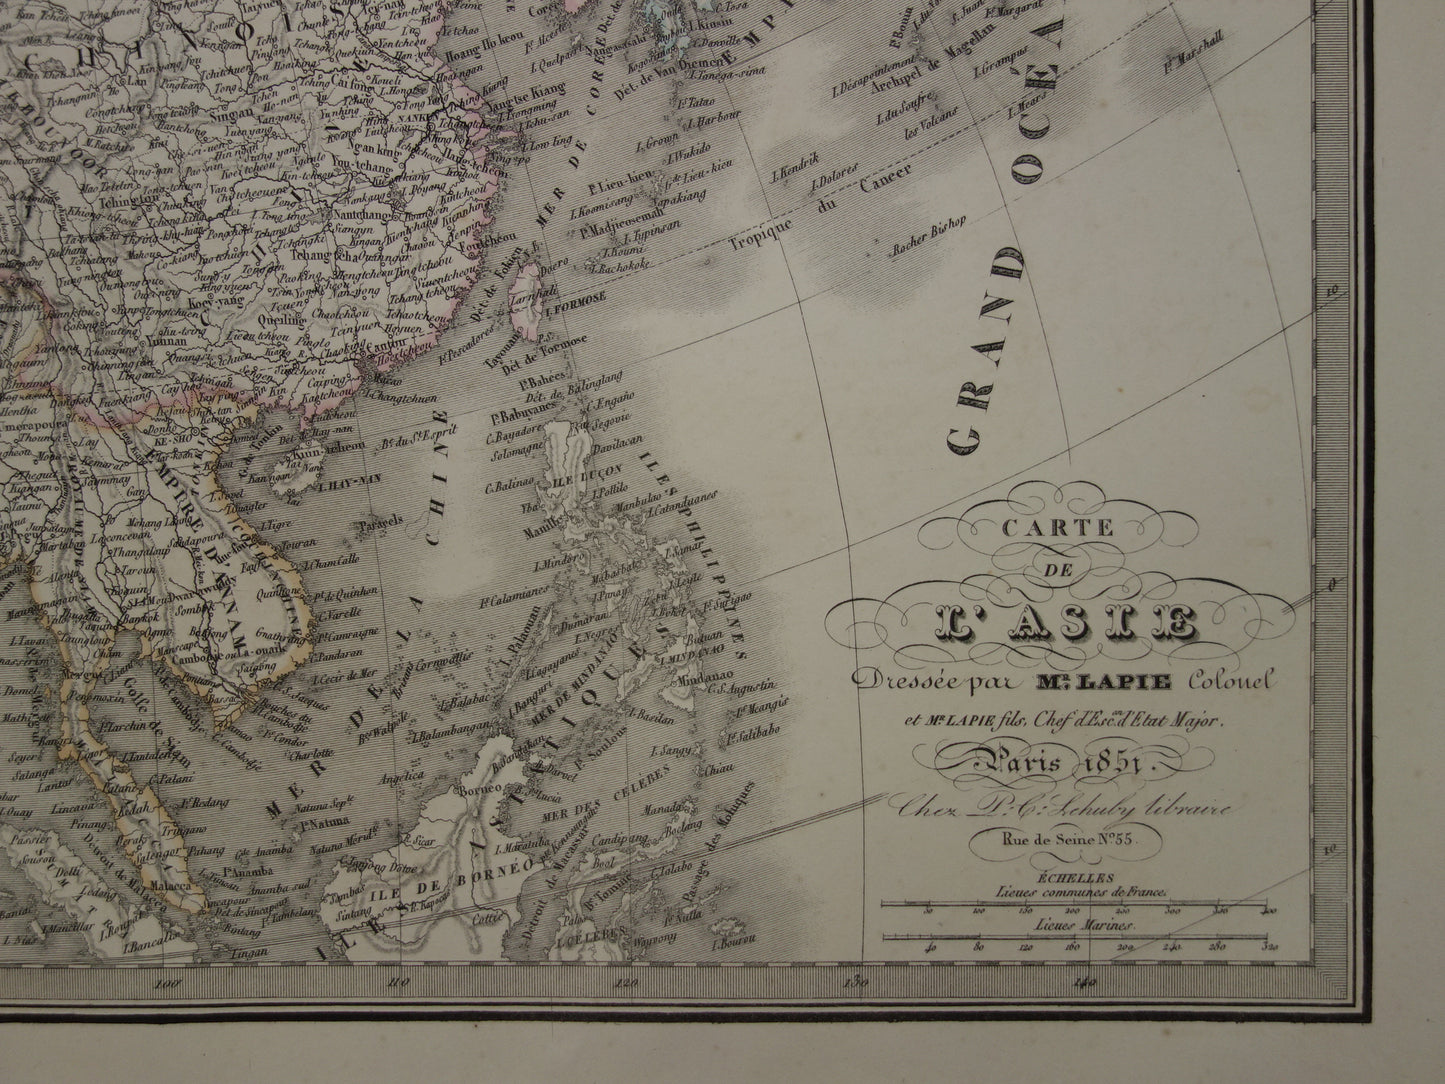 Prachtige antieke kaart van AZIË uit 1851 Grote originele oude handgekleurde landkaart 51 x 69 met jaartal te koop vintage landkaarten van continent Azie